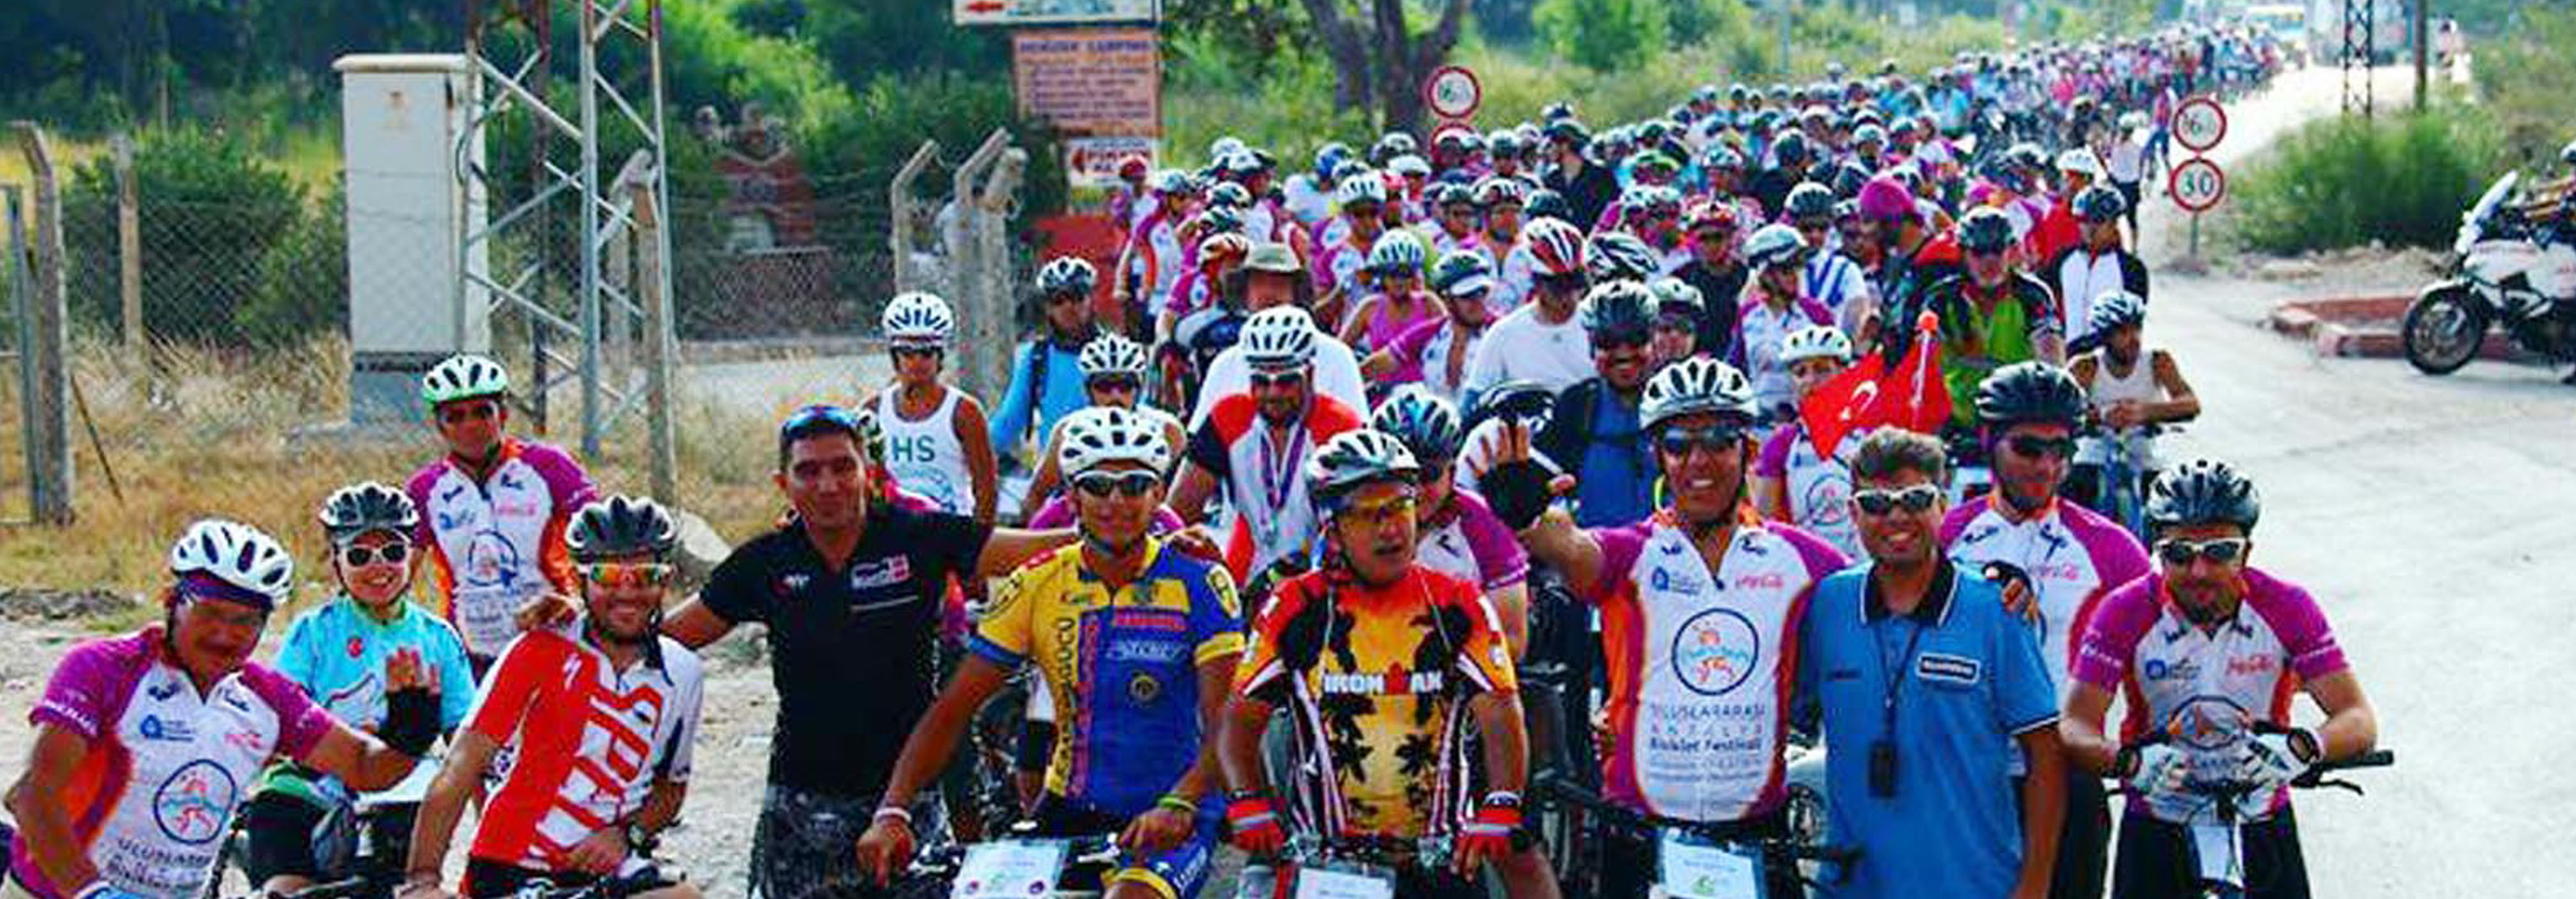 manavgat-bisiklet-festivali-basliyor0327c4351a